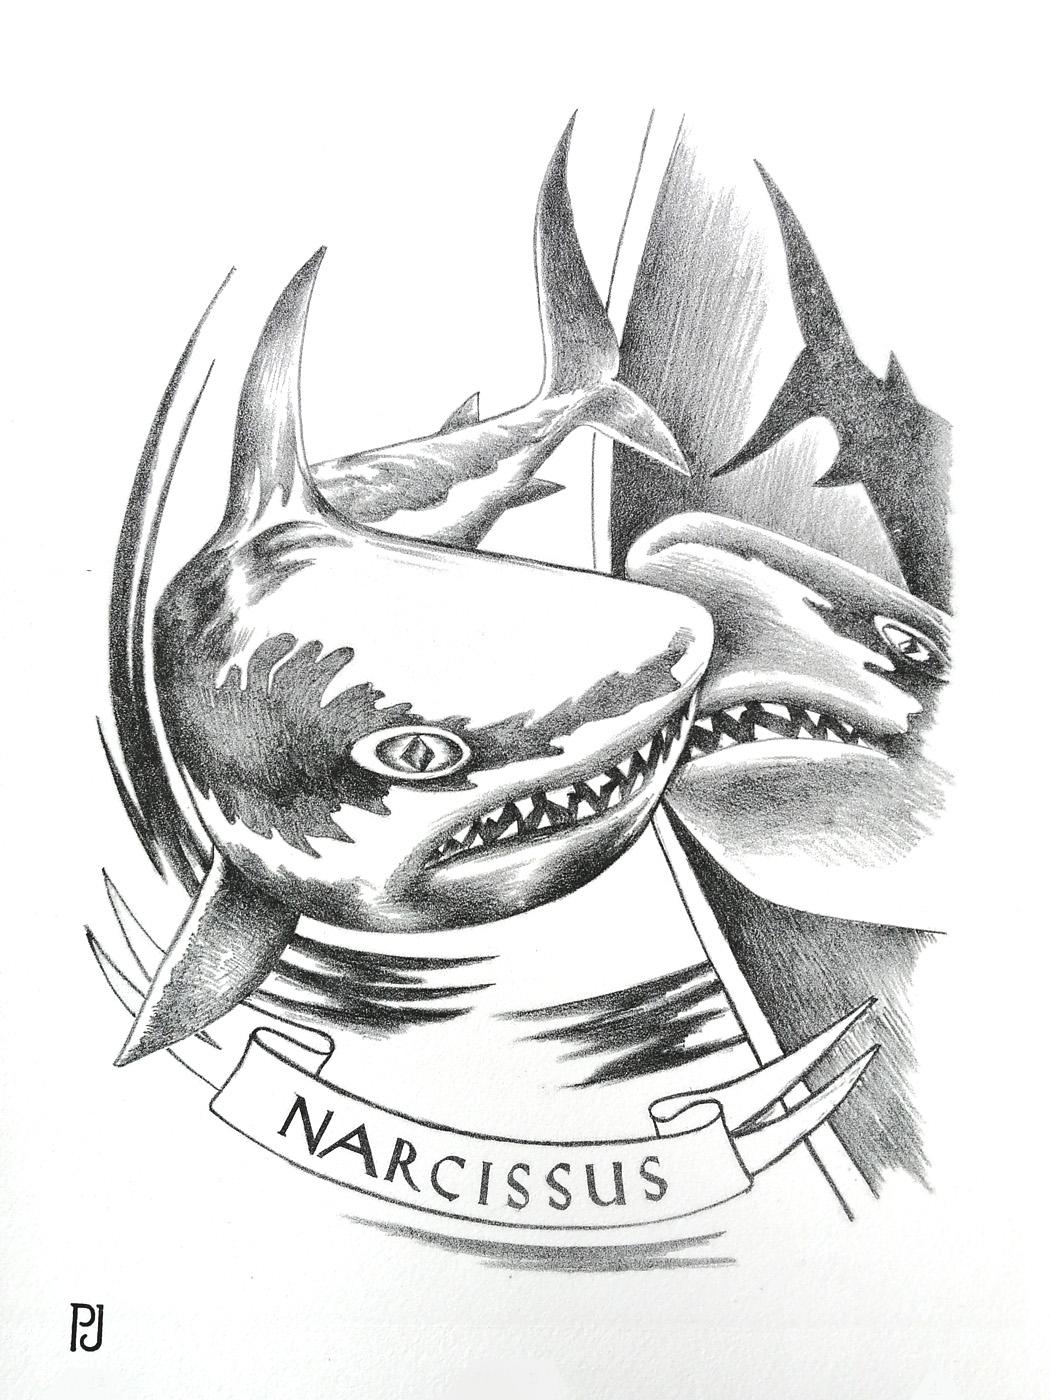 Impression lithographique / encre noire imprimée sur papier JOHANOT 240gr.
Un requin peut-il tomber amoureux de son image dans un reflet ? Un titre très explicite lève toute ambiguïté sur le sujet de ce dessin, qui mêle les codes du tatouage et de